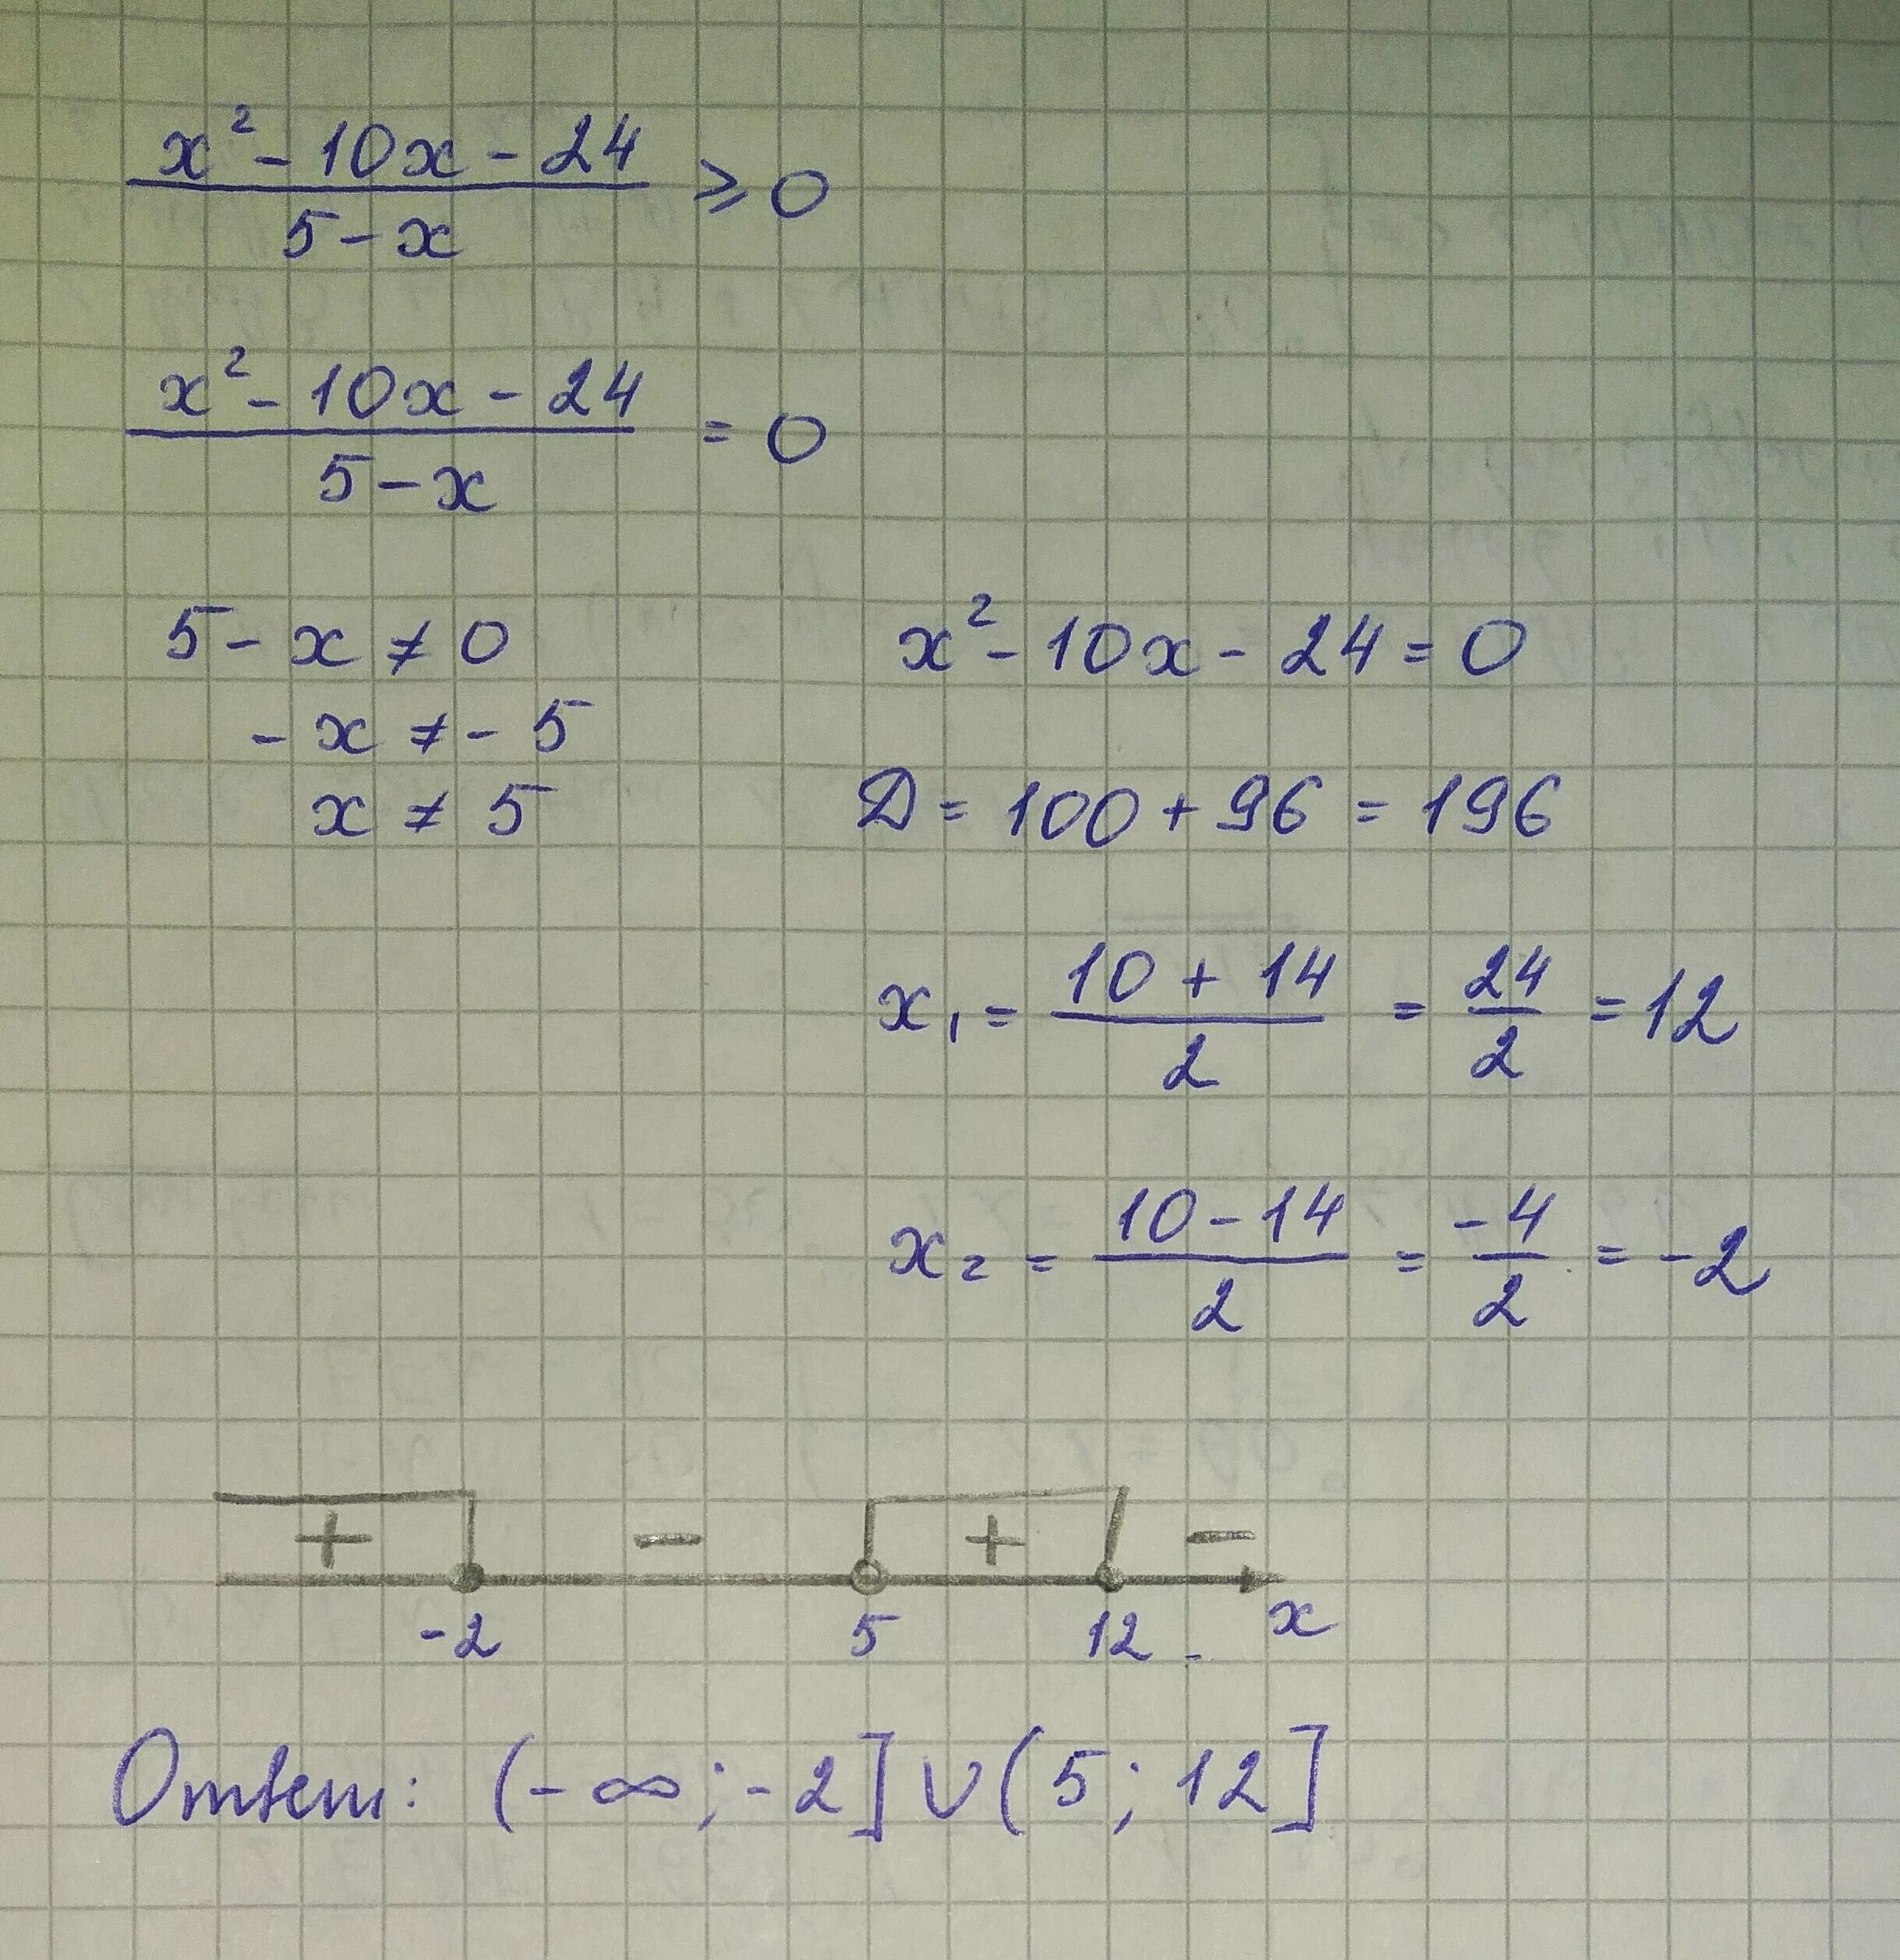 0.5 x 8 0.5 x 4. 5x-x2 больше 0. (X+10)^2=(5-X)^2. 2x:-x-5=0 ответ. -X2+2x-5 больше 0.